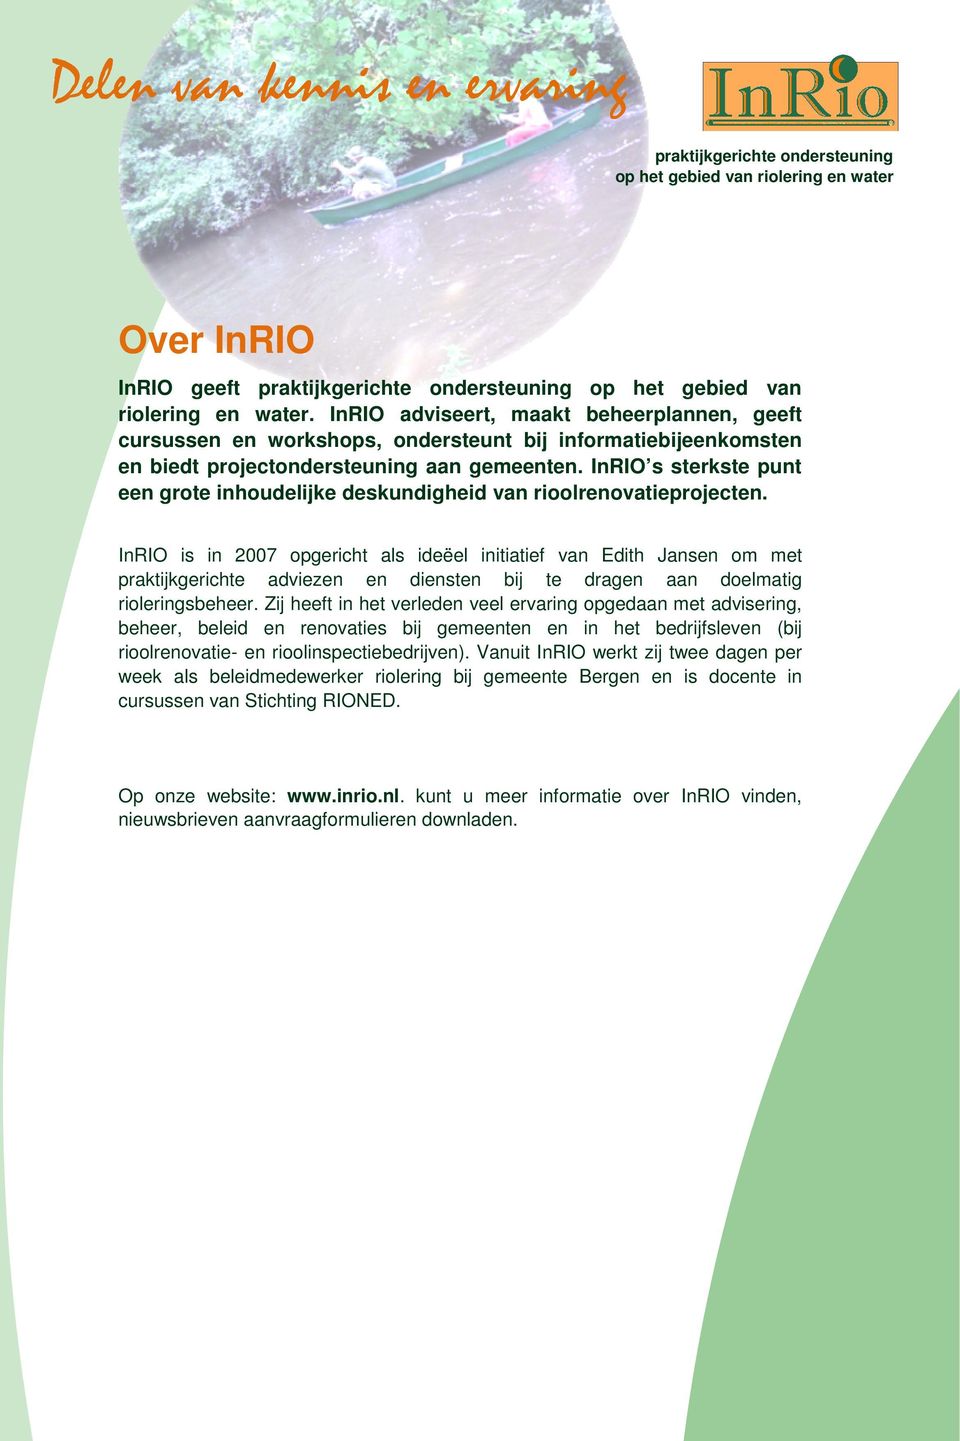 InRIO s sterkste punt een grote inhoudelijke deskundigheid van rioolrenovatieprojecten.